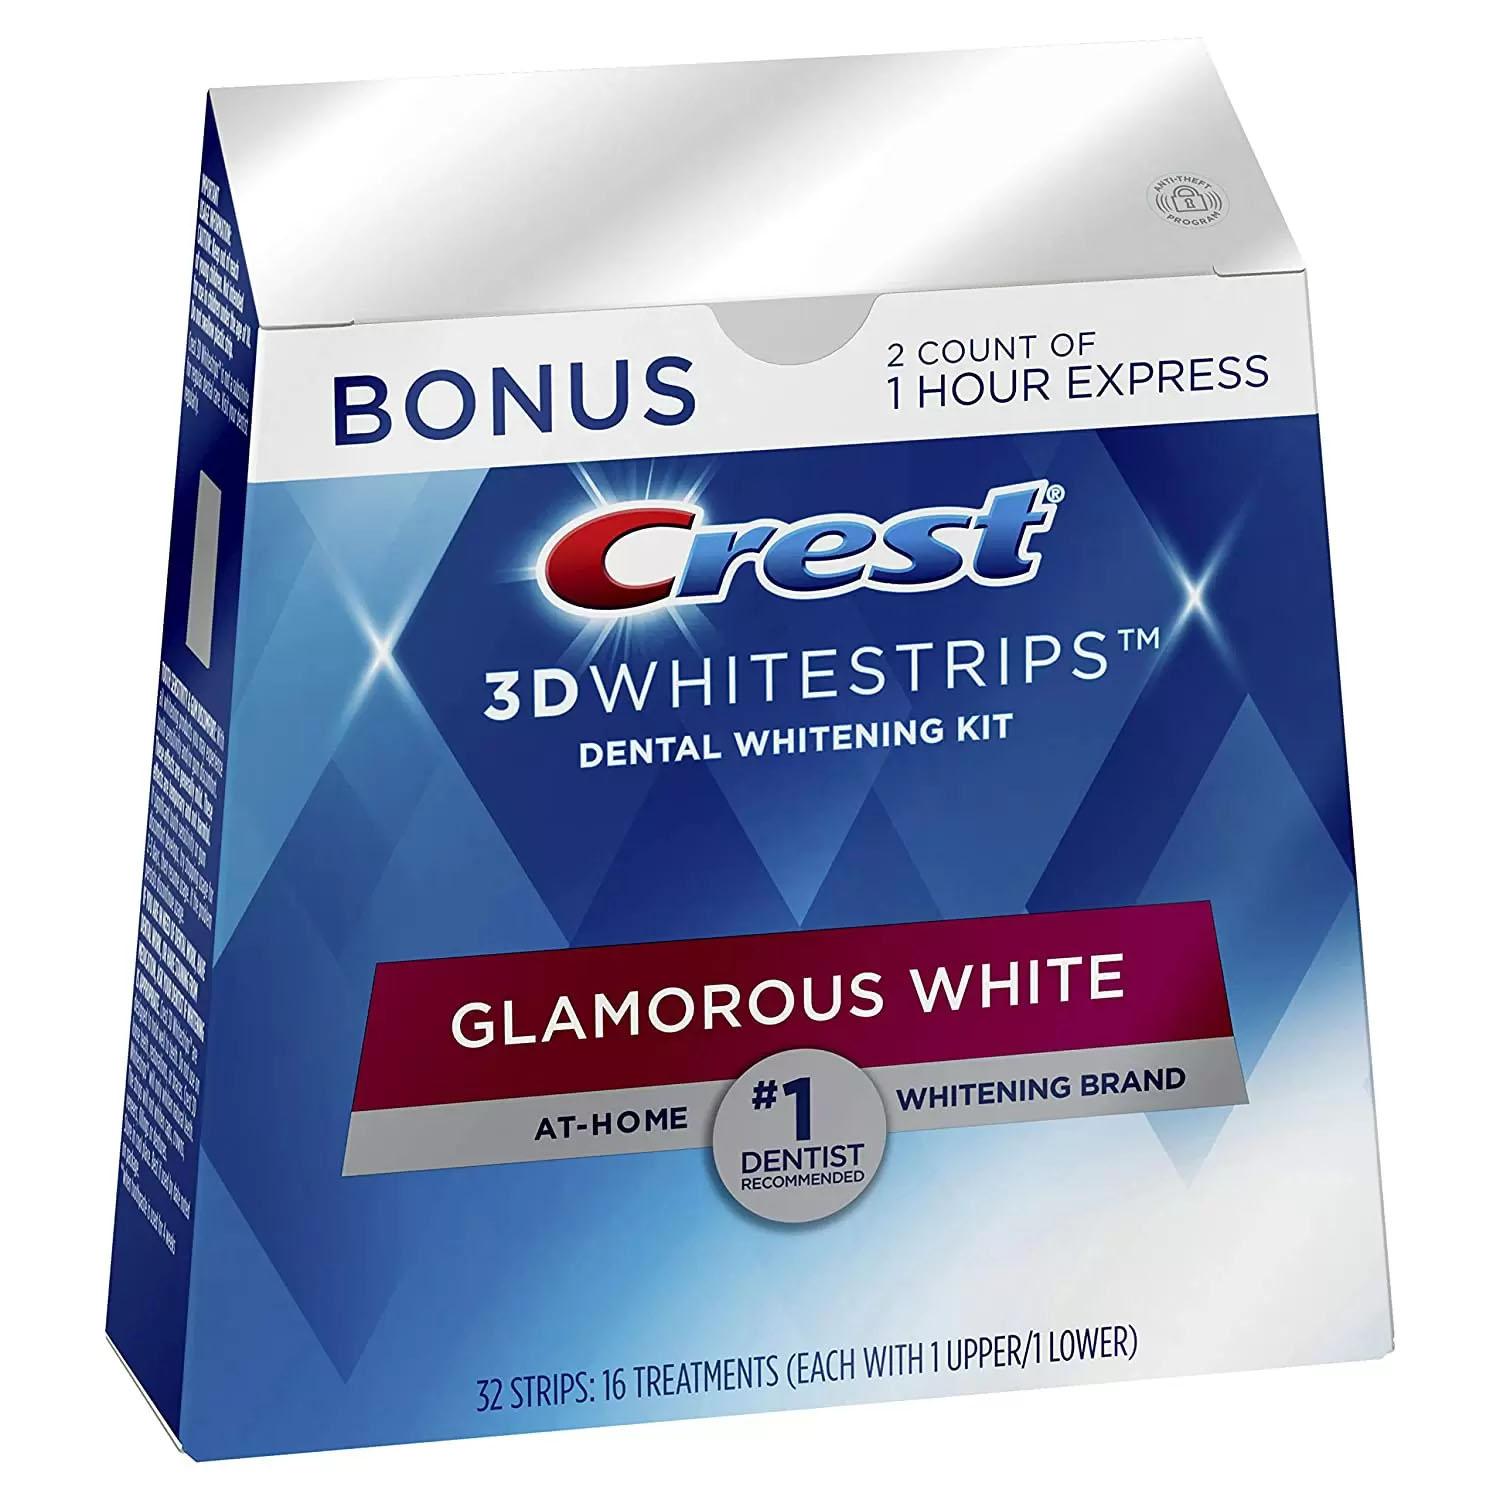 Crest 3D Whitestrips Glamorous White Teeth Whitening Kit for $28.49 Shipped